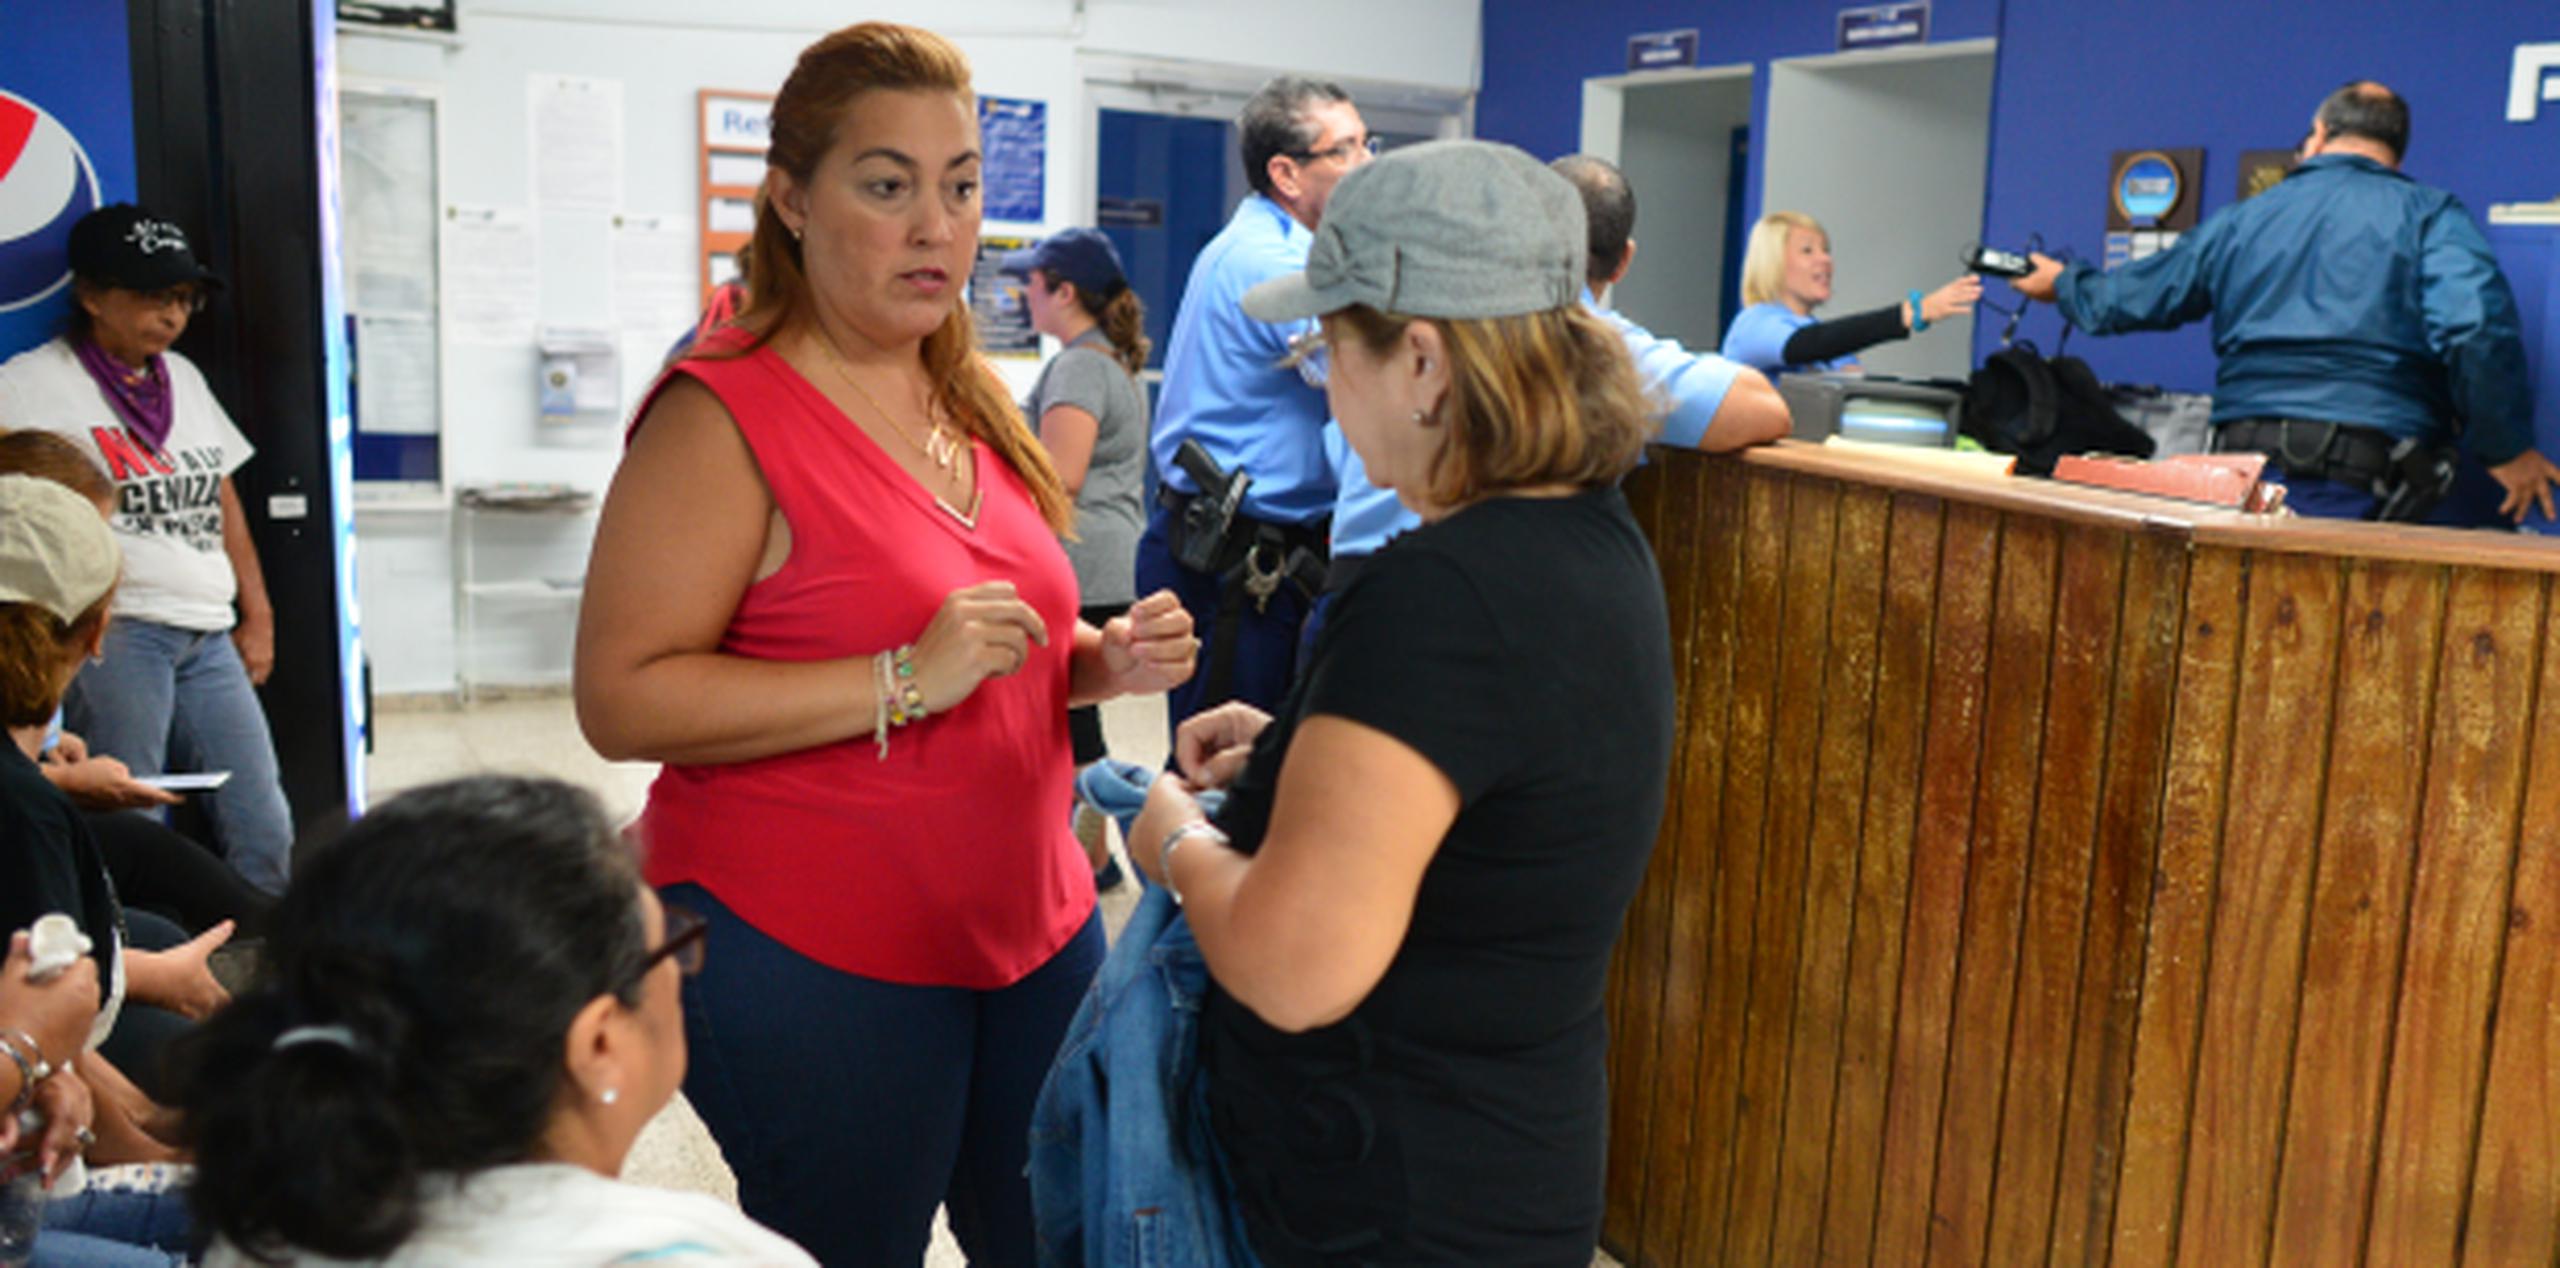 Sifre, con camisa naranja, pudo ver a la líder obrera detenida, Eva Ayala, quien expresó preocupación por su familia. (luis.alcaladelolmo@gfrmedia.com)